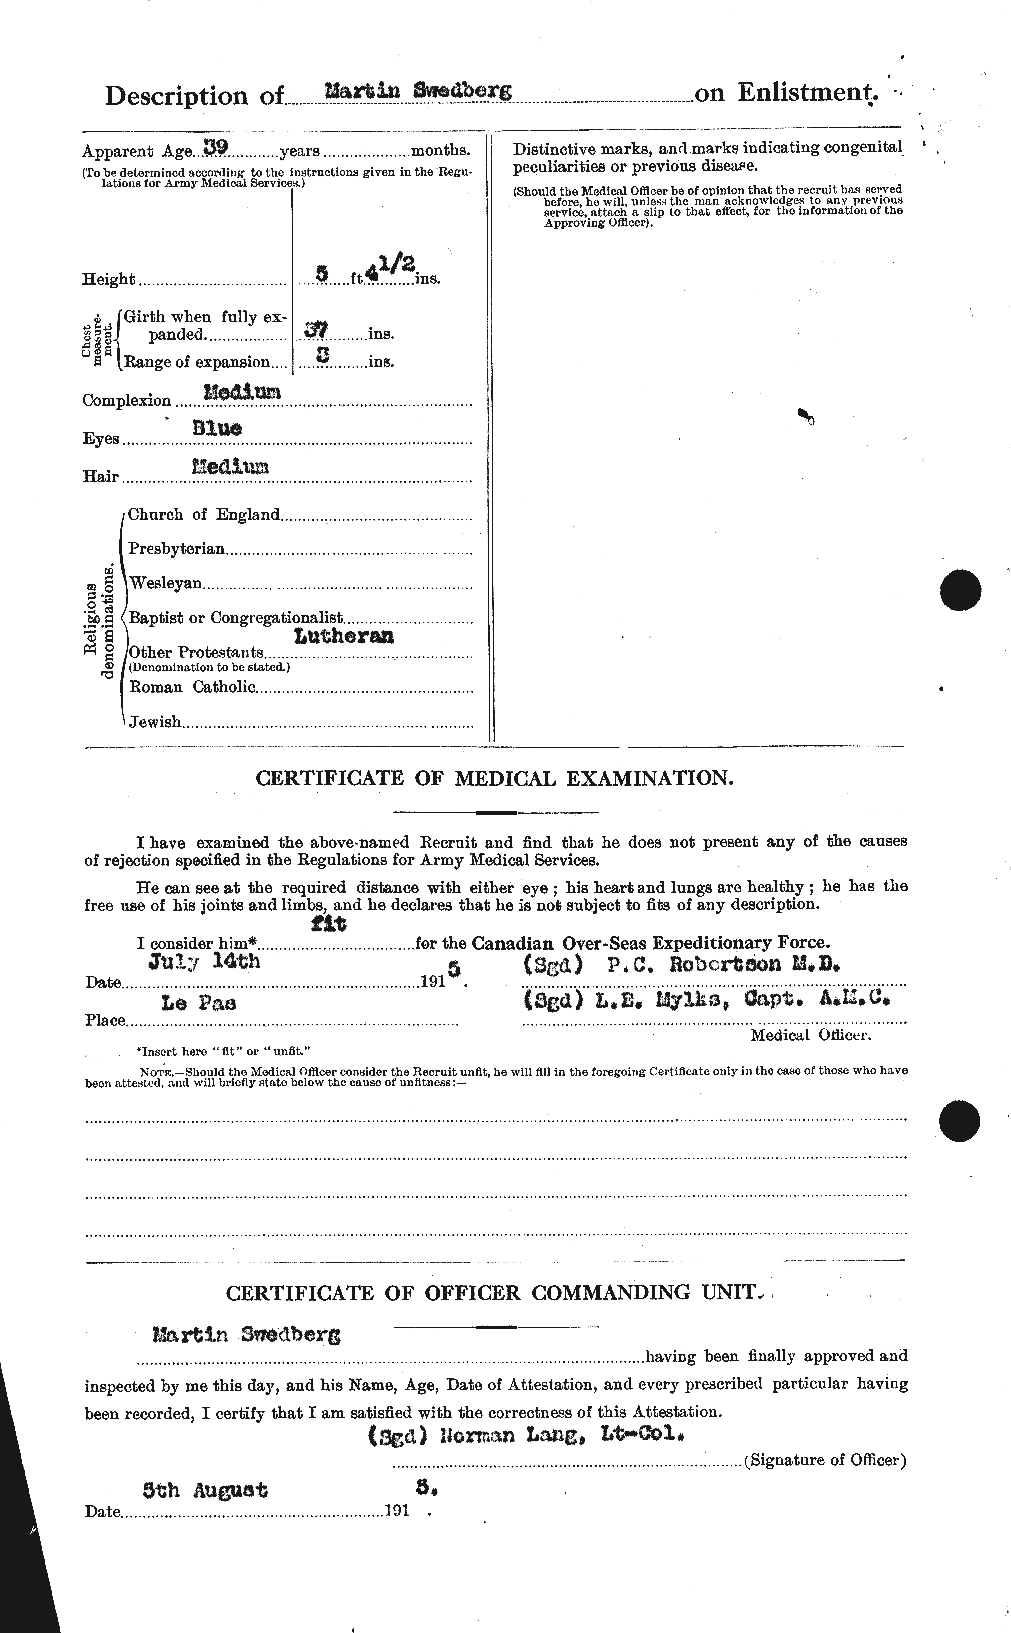 Dossiers du Personnel de la Première Guerre mondiale - CEC 083292b